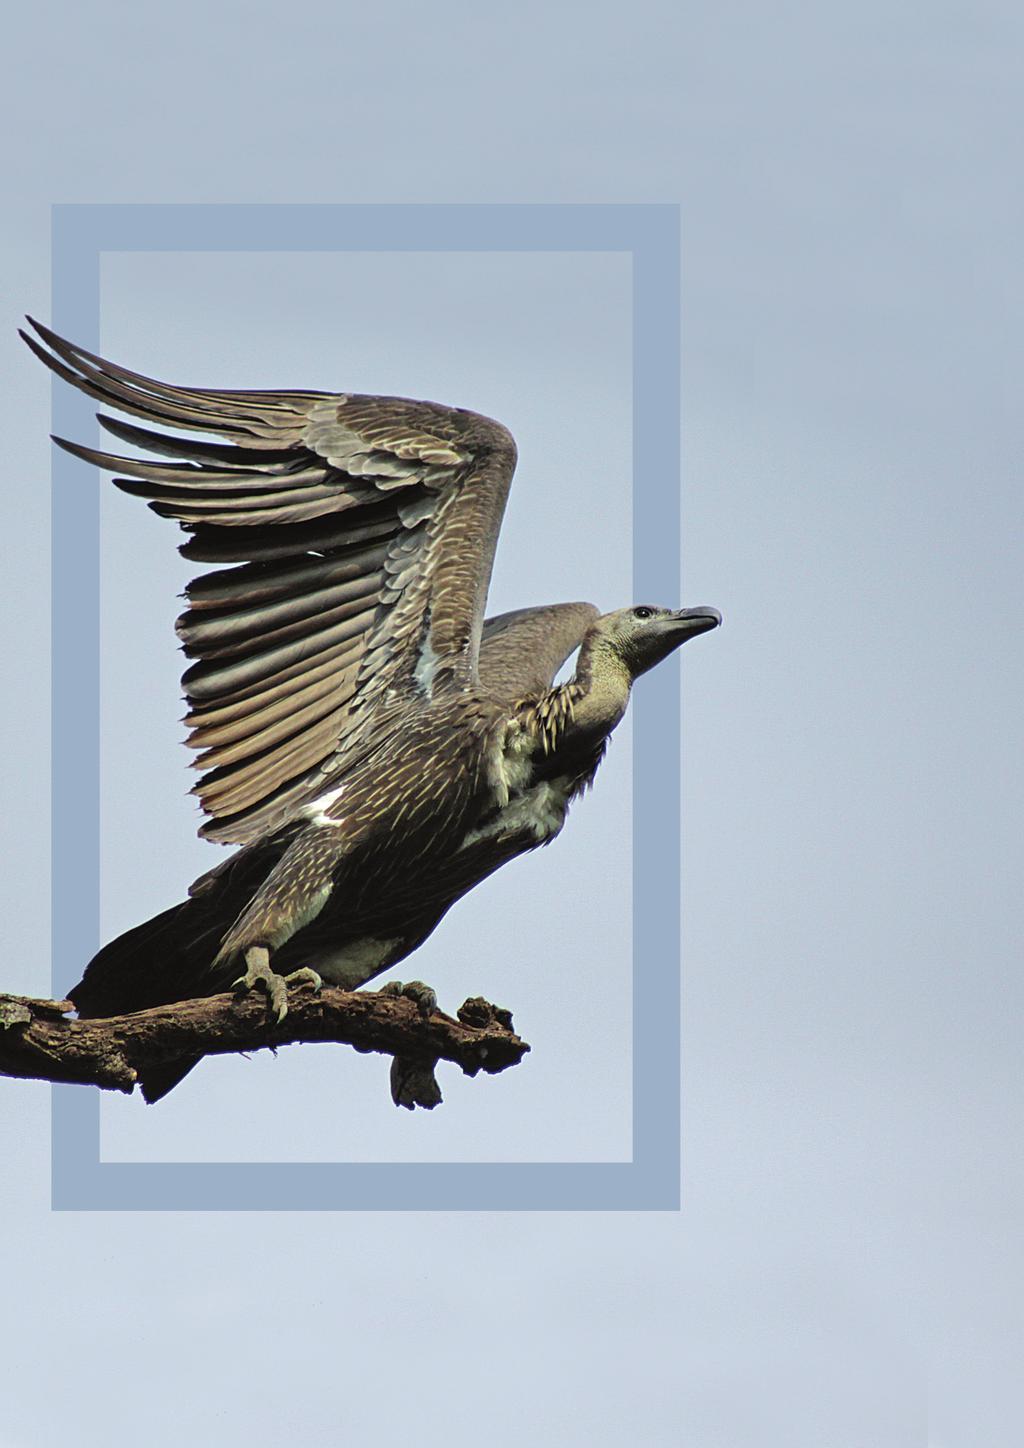 Vulture Conservation Program